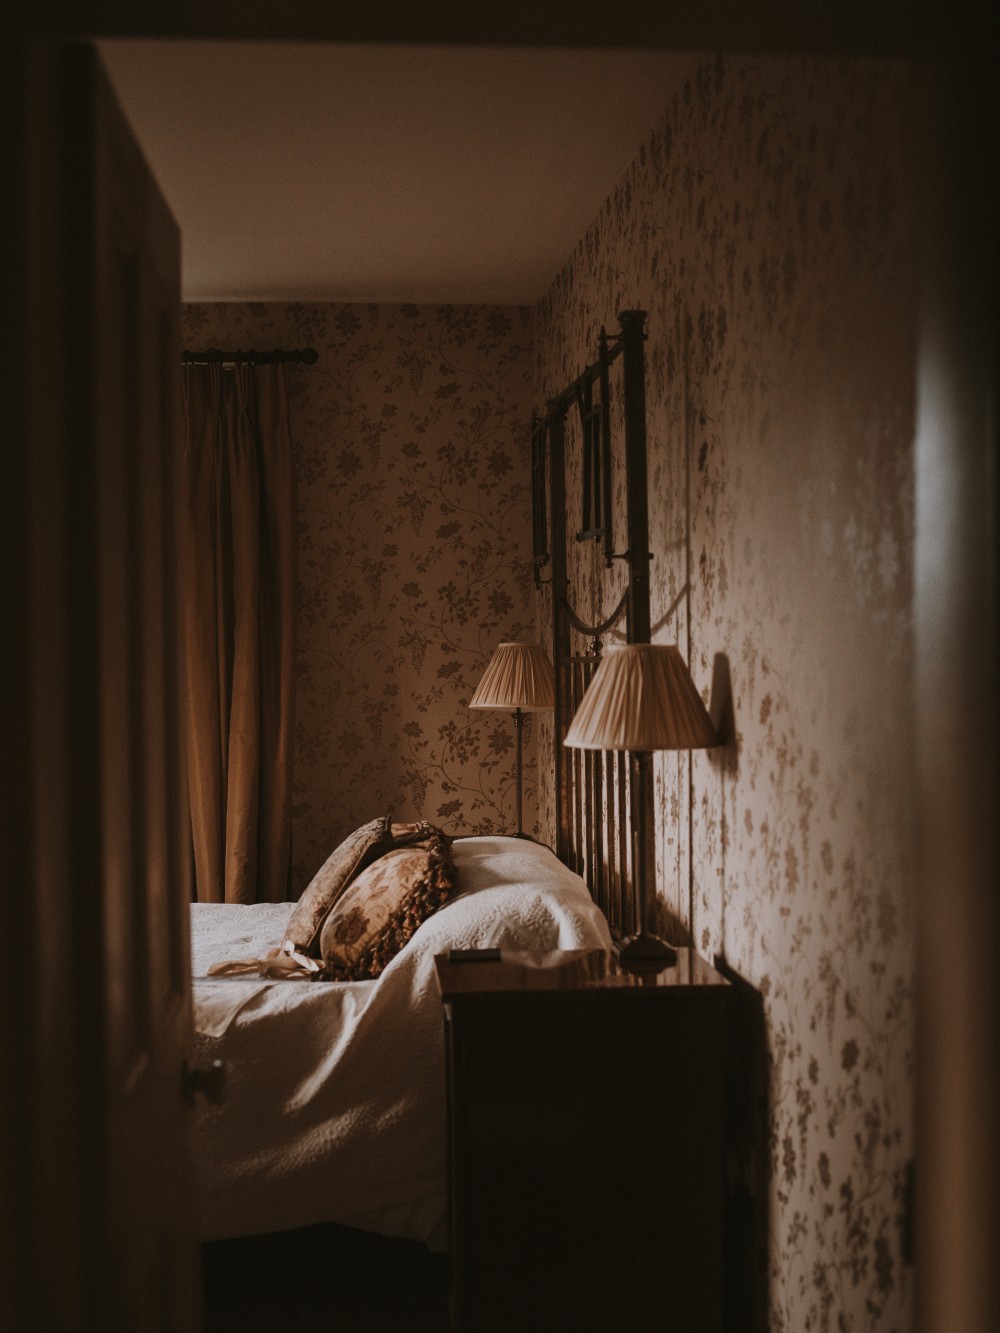 lampka z abażurem, lampka na nakastliku, lampka stojąca przy łóżku